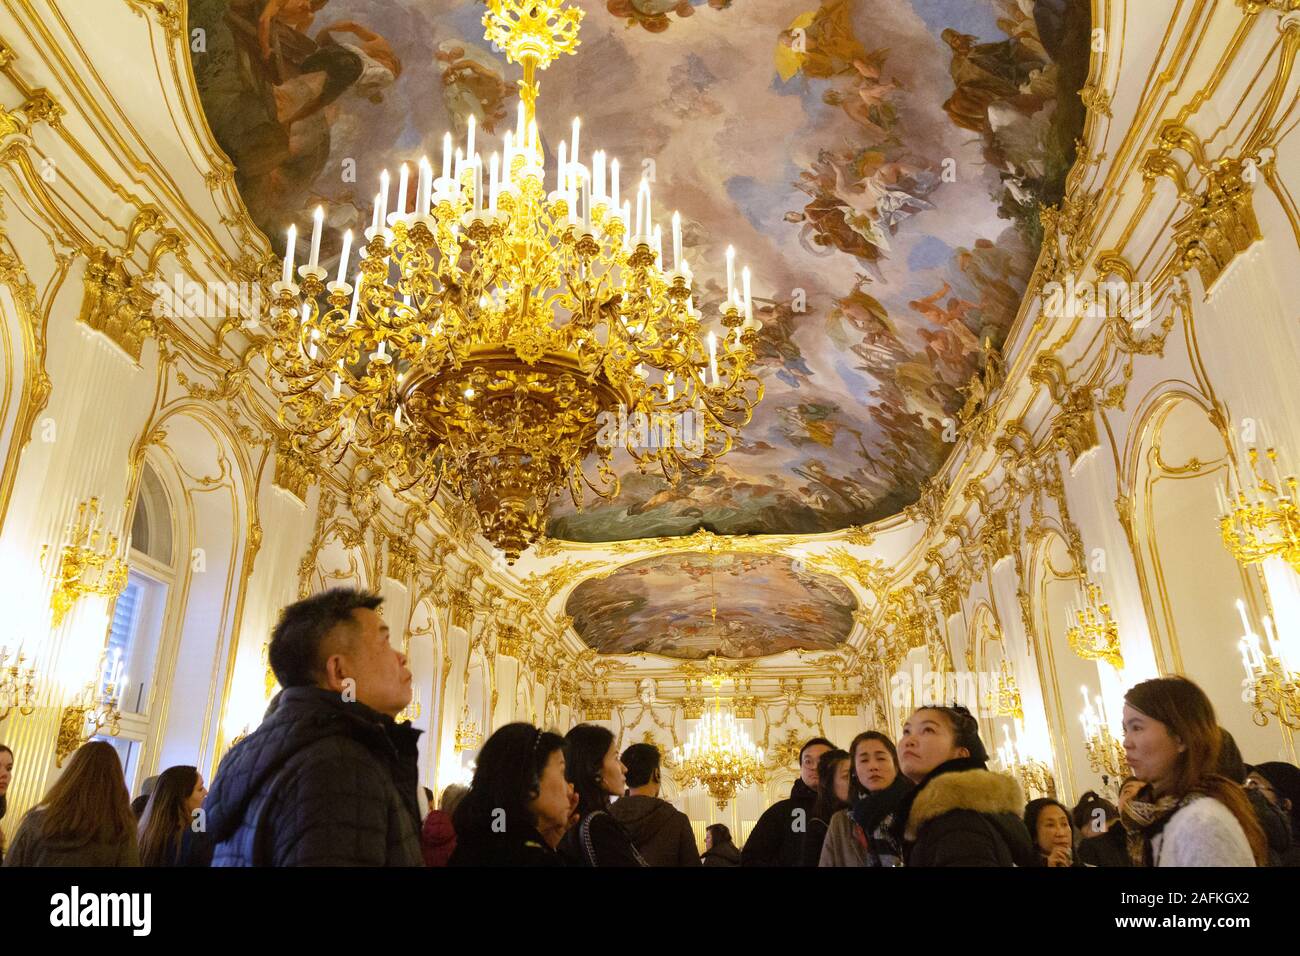 El interior del palacio de Schonbrunn; turistas en la gran sala del Palacio de Schönbrunn, sitio del patrimonio mundial de la UNESCO, Viena Austria Europa Foto de stock